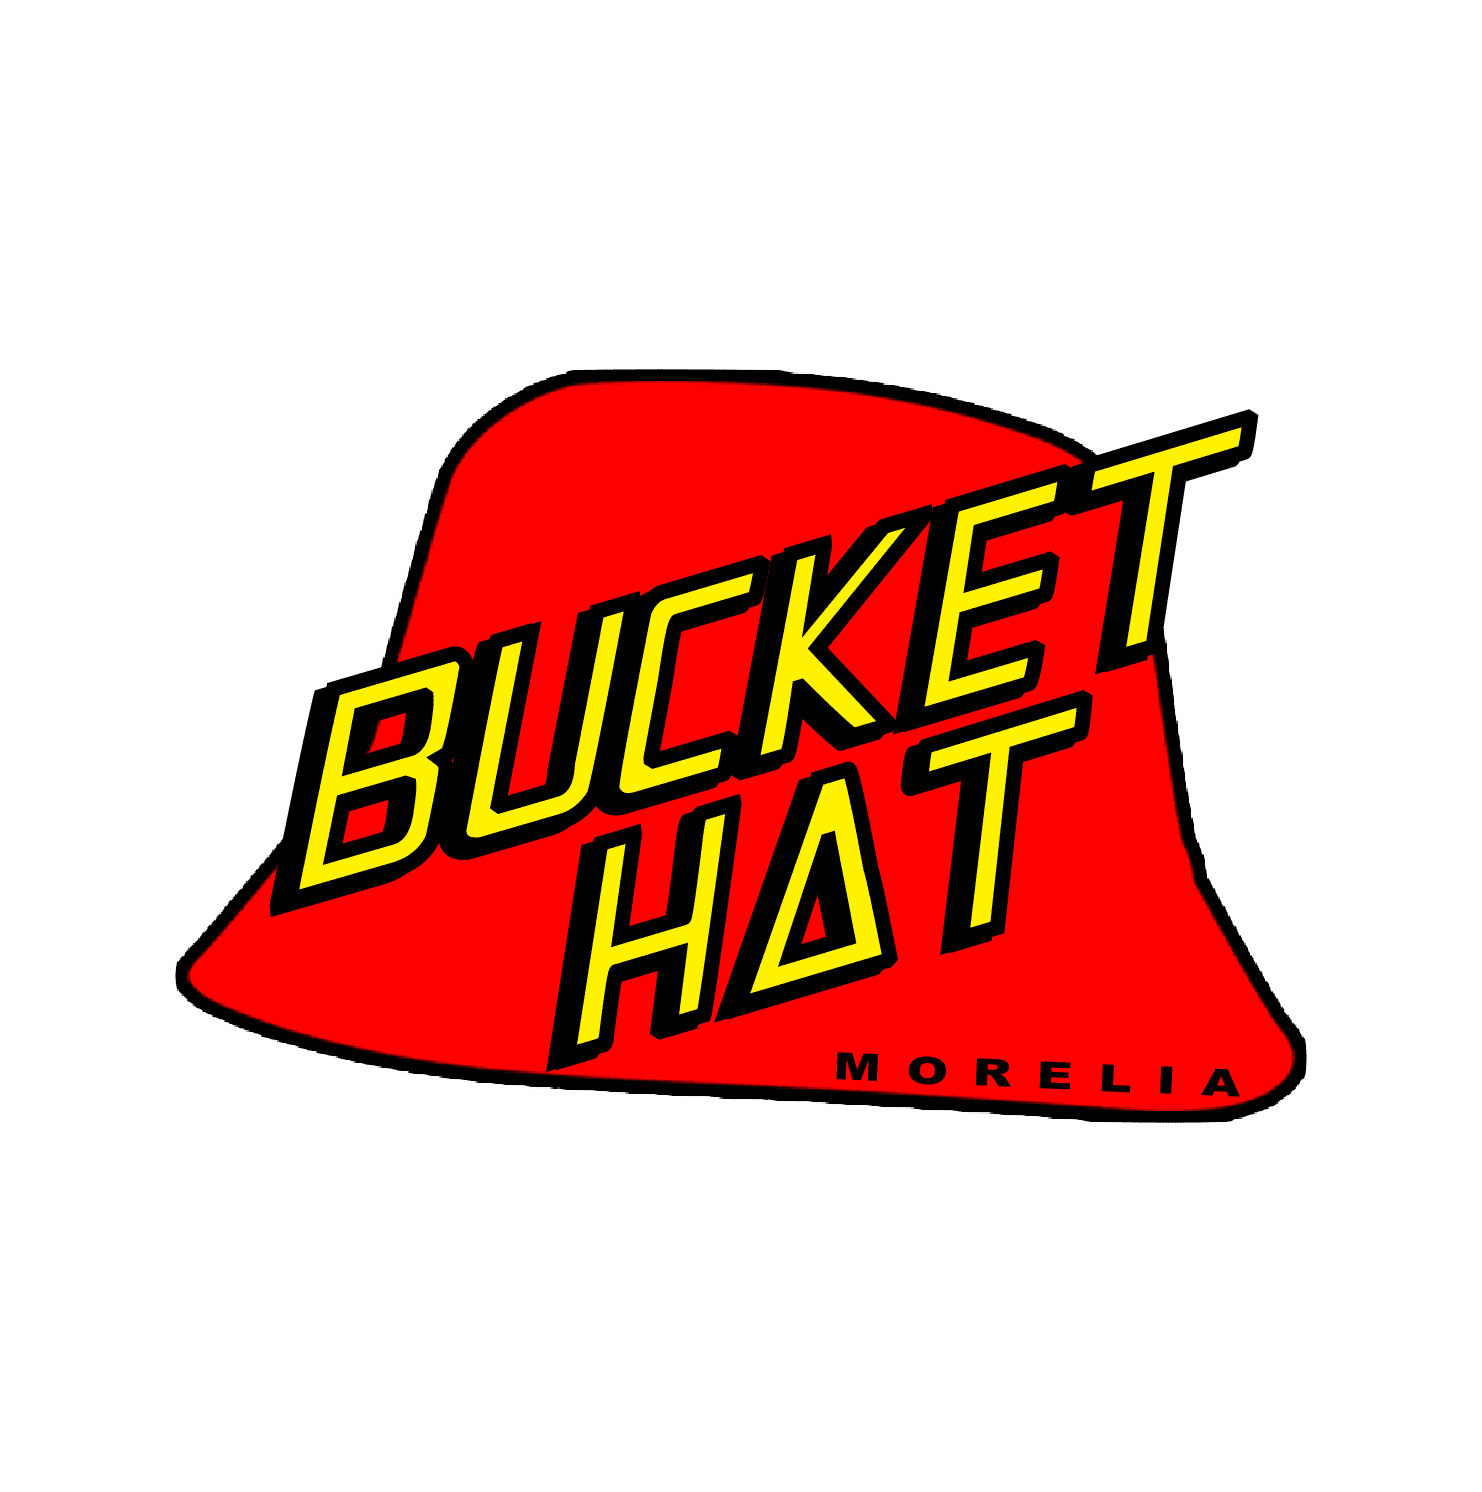 Bucket Hat Morelia